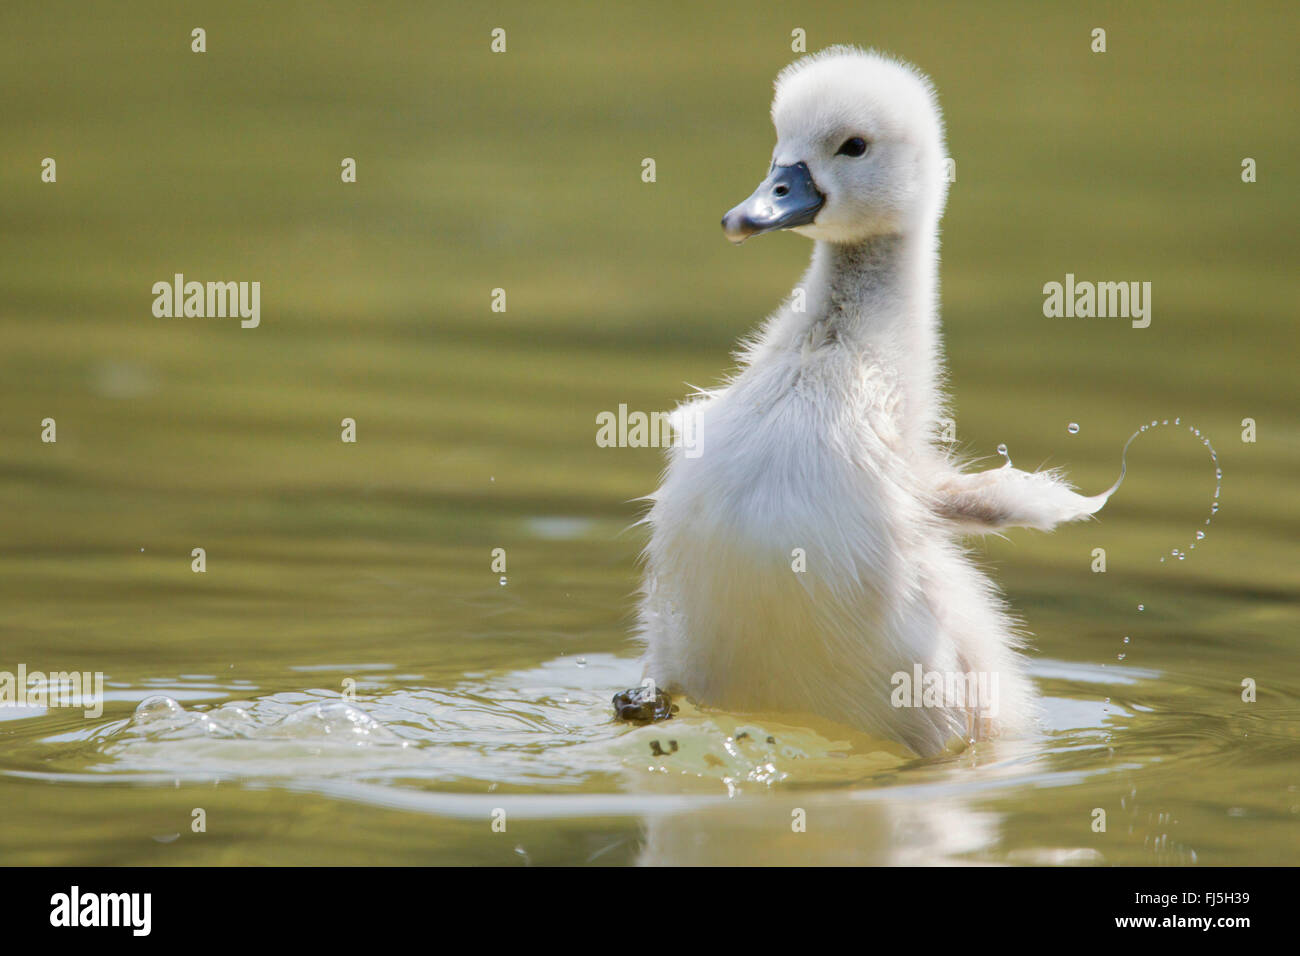 Mute swan (Cygnus olor), Poussin, Autriche, Burgenland Banque D'Images